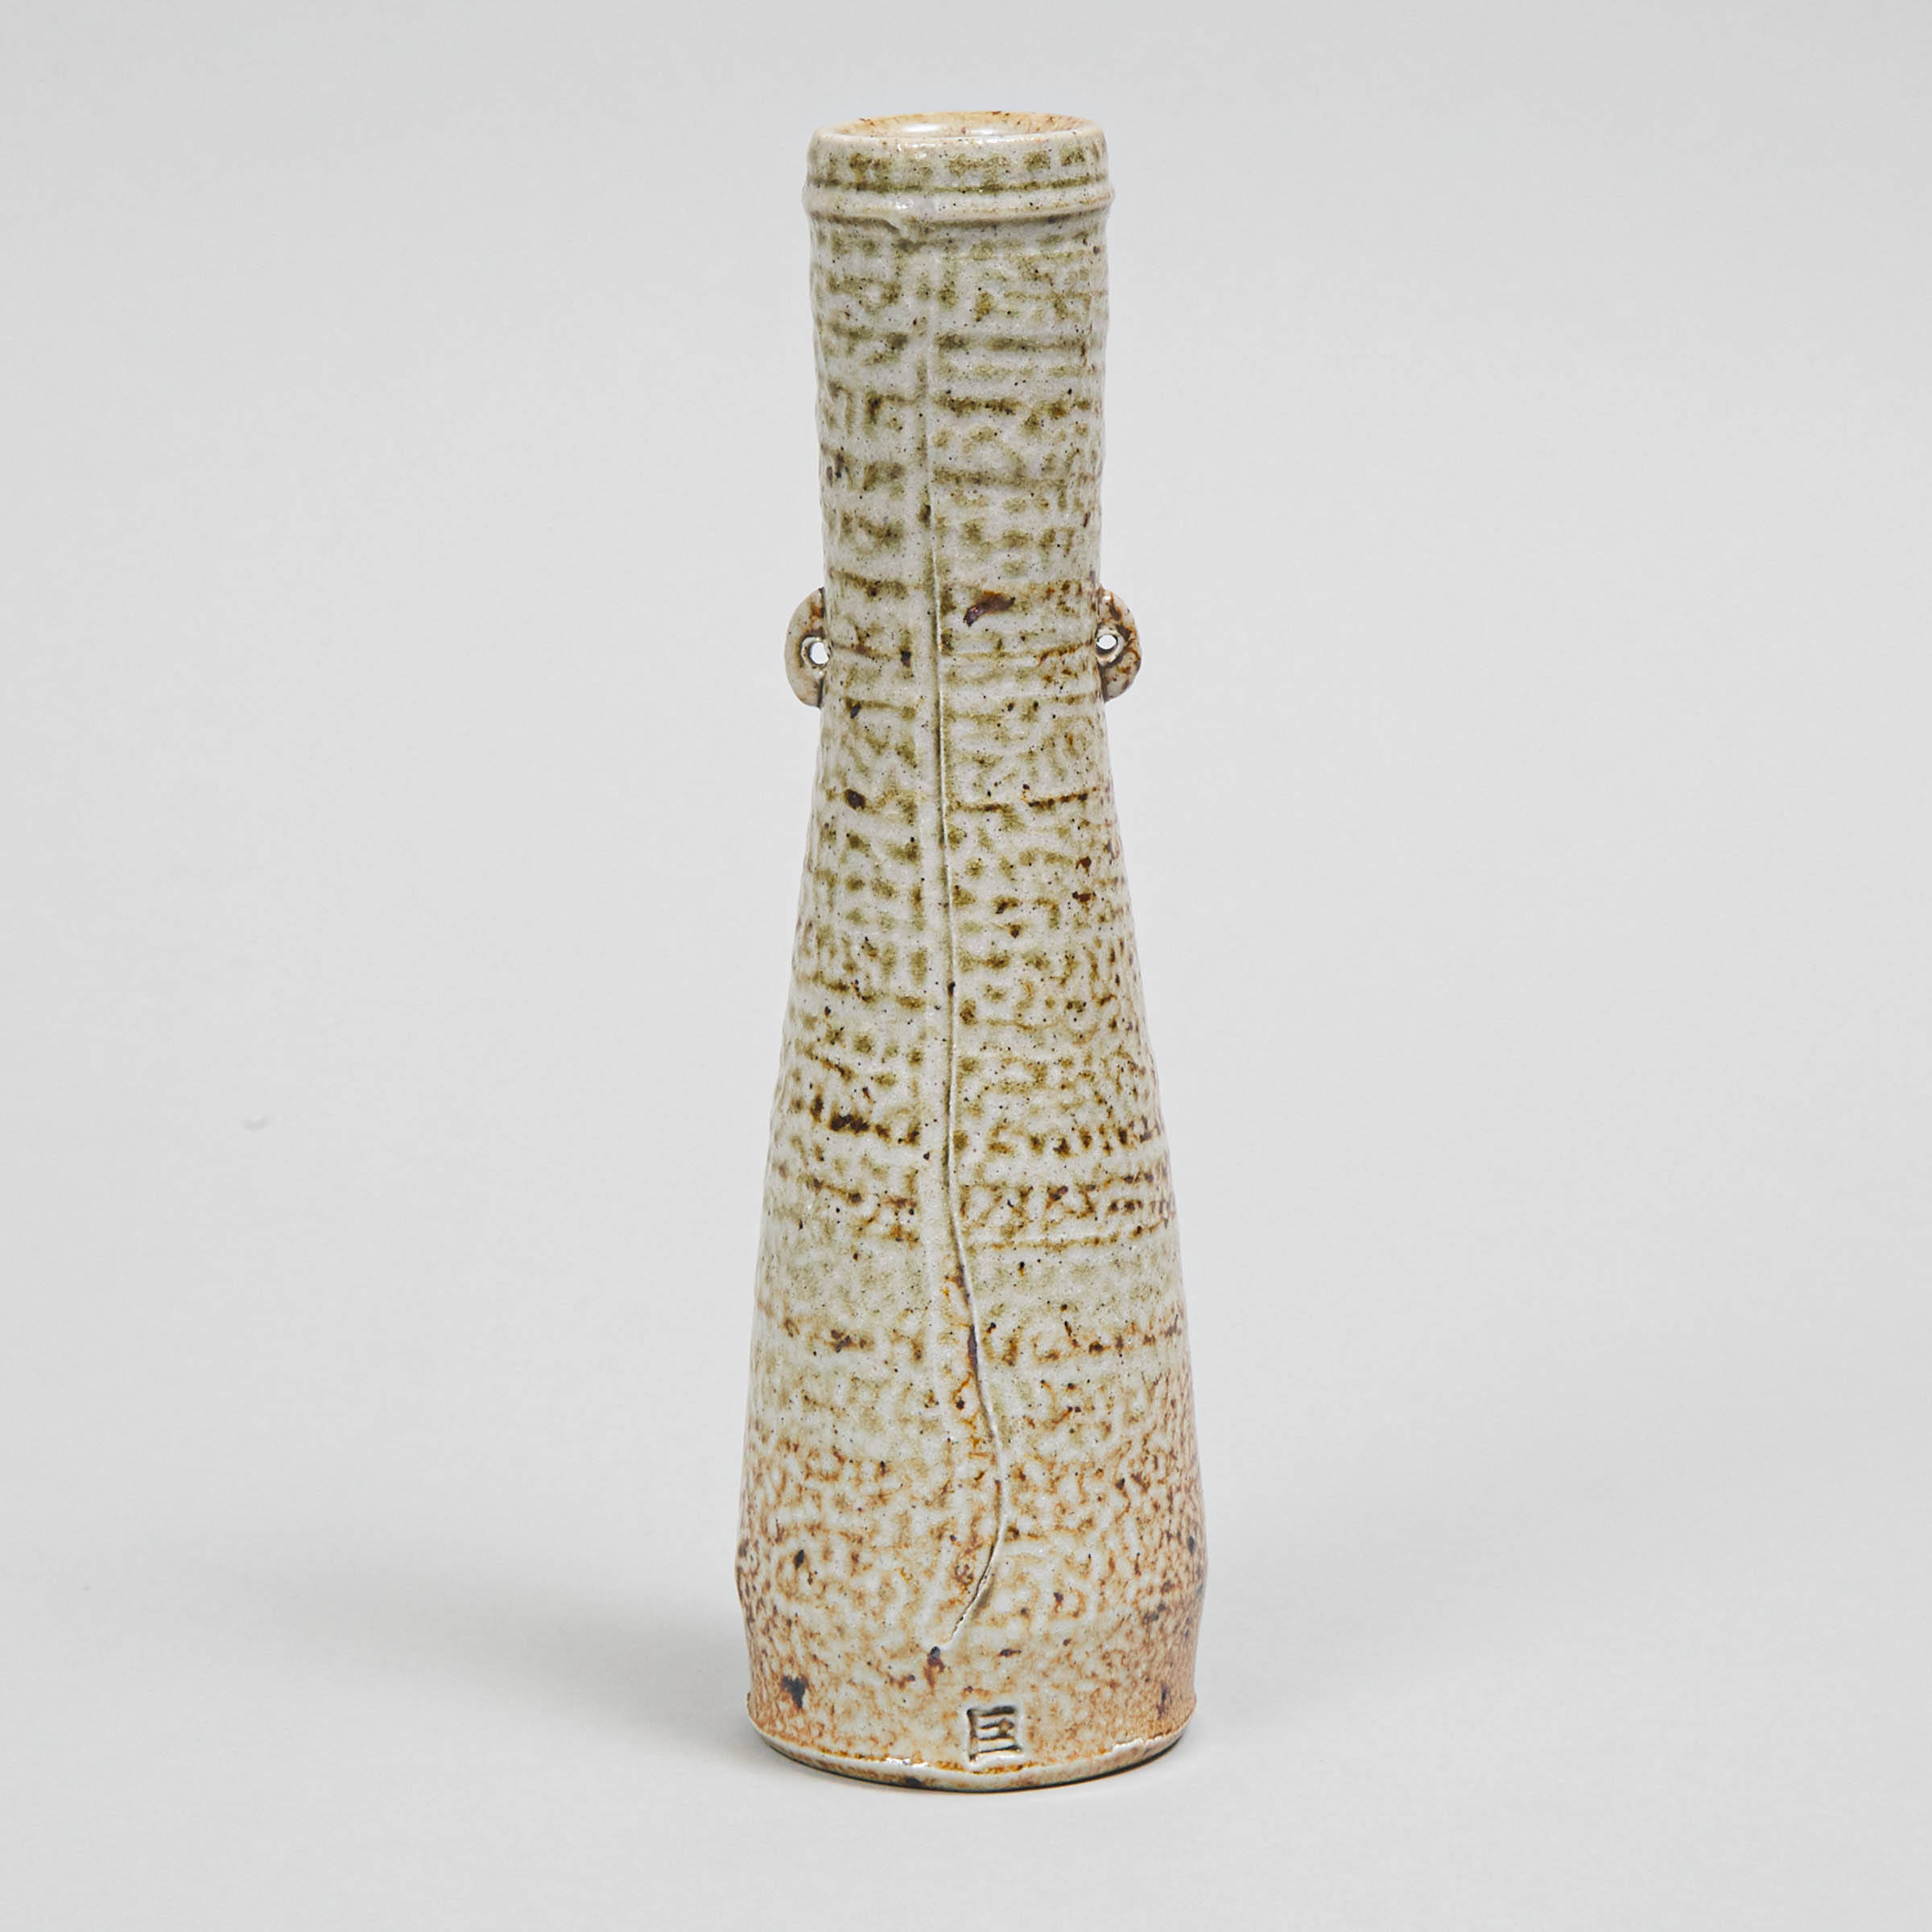 Lari Robson (Canadian, 1942-2012), Glazed Stoneware Vase